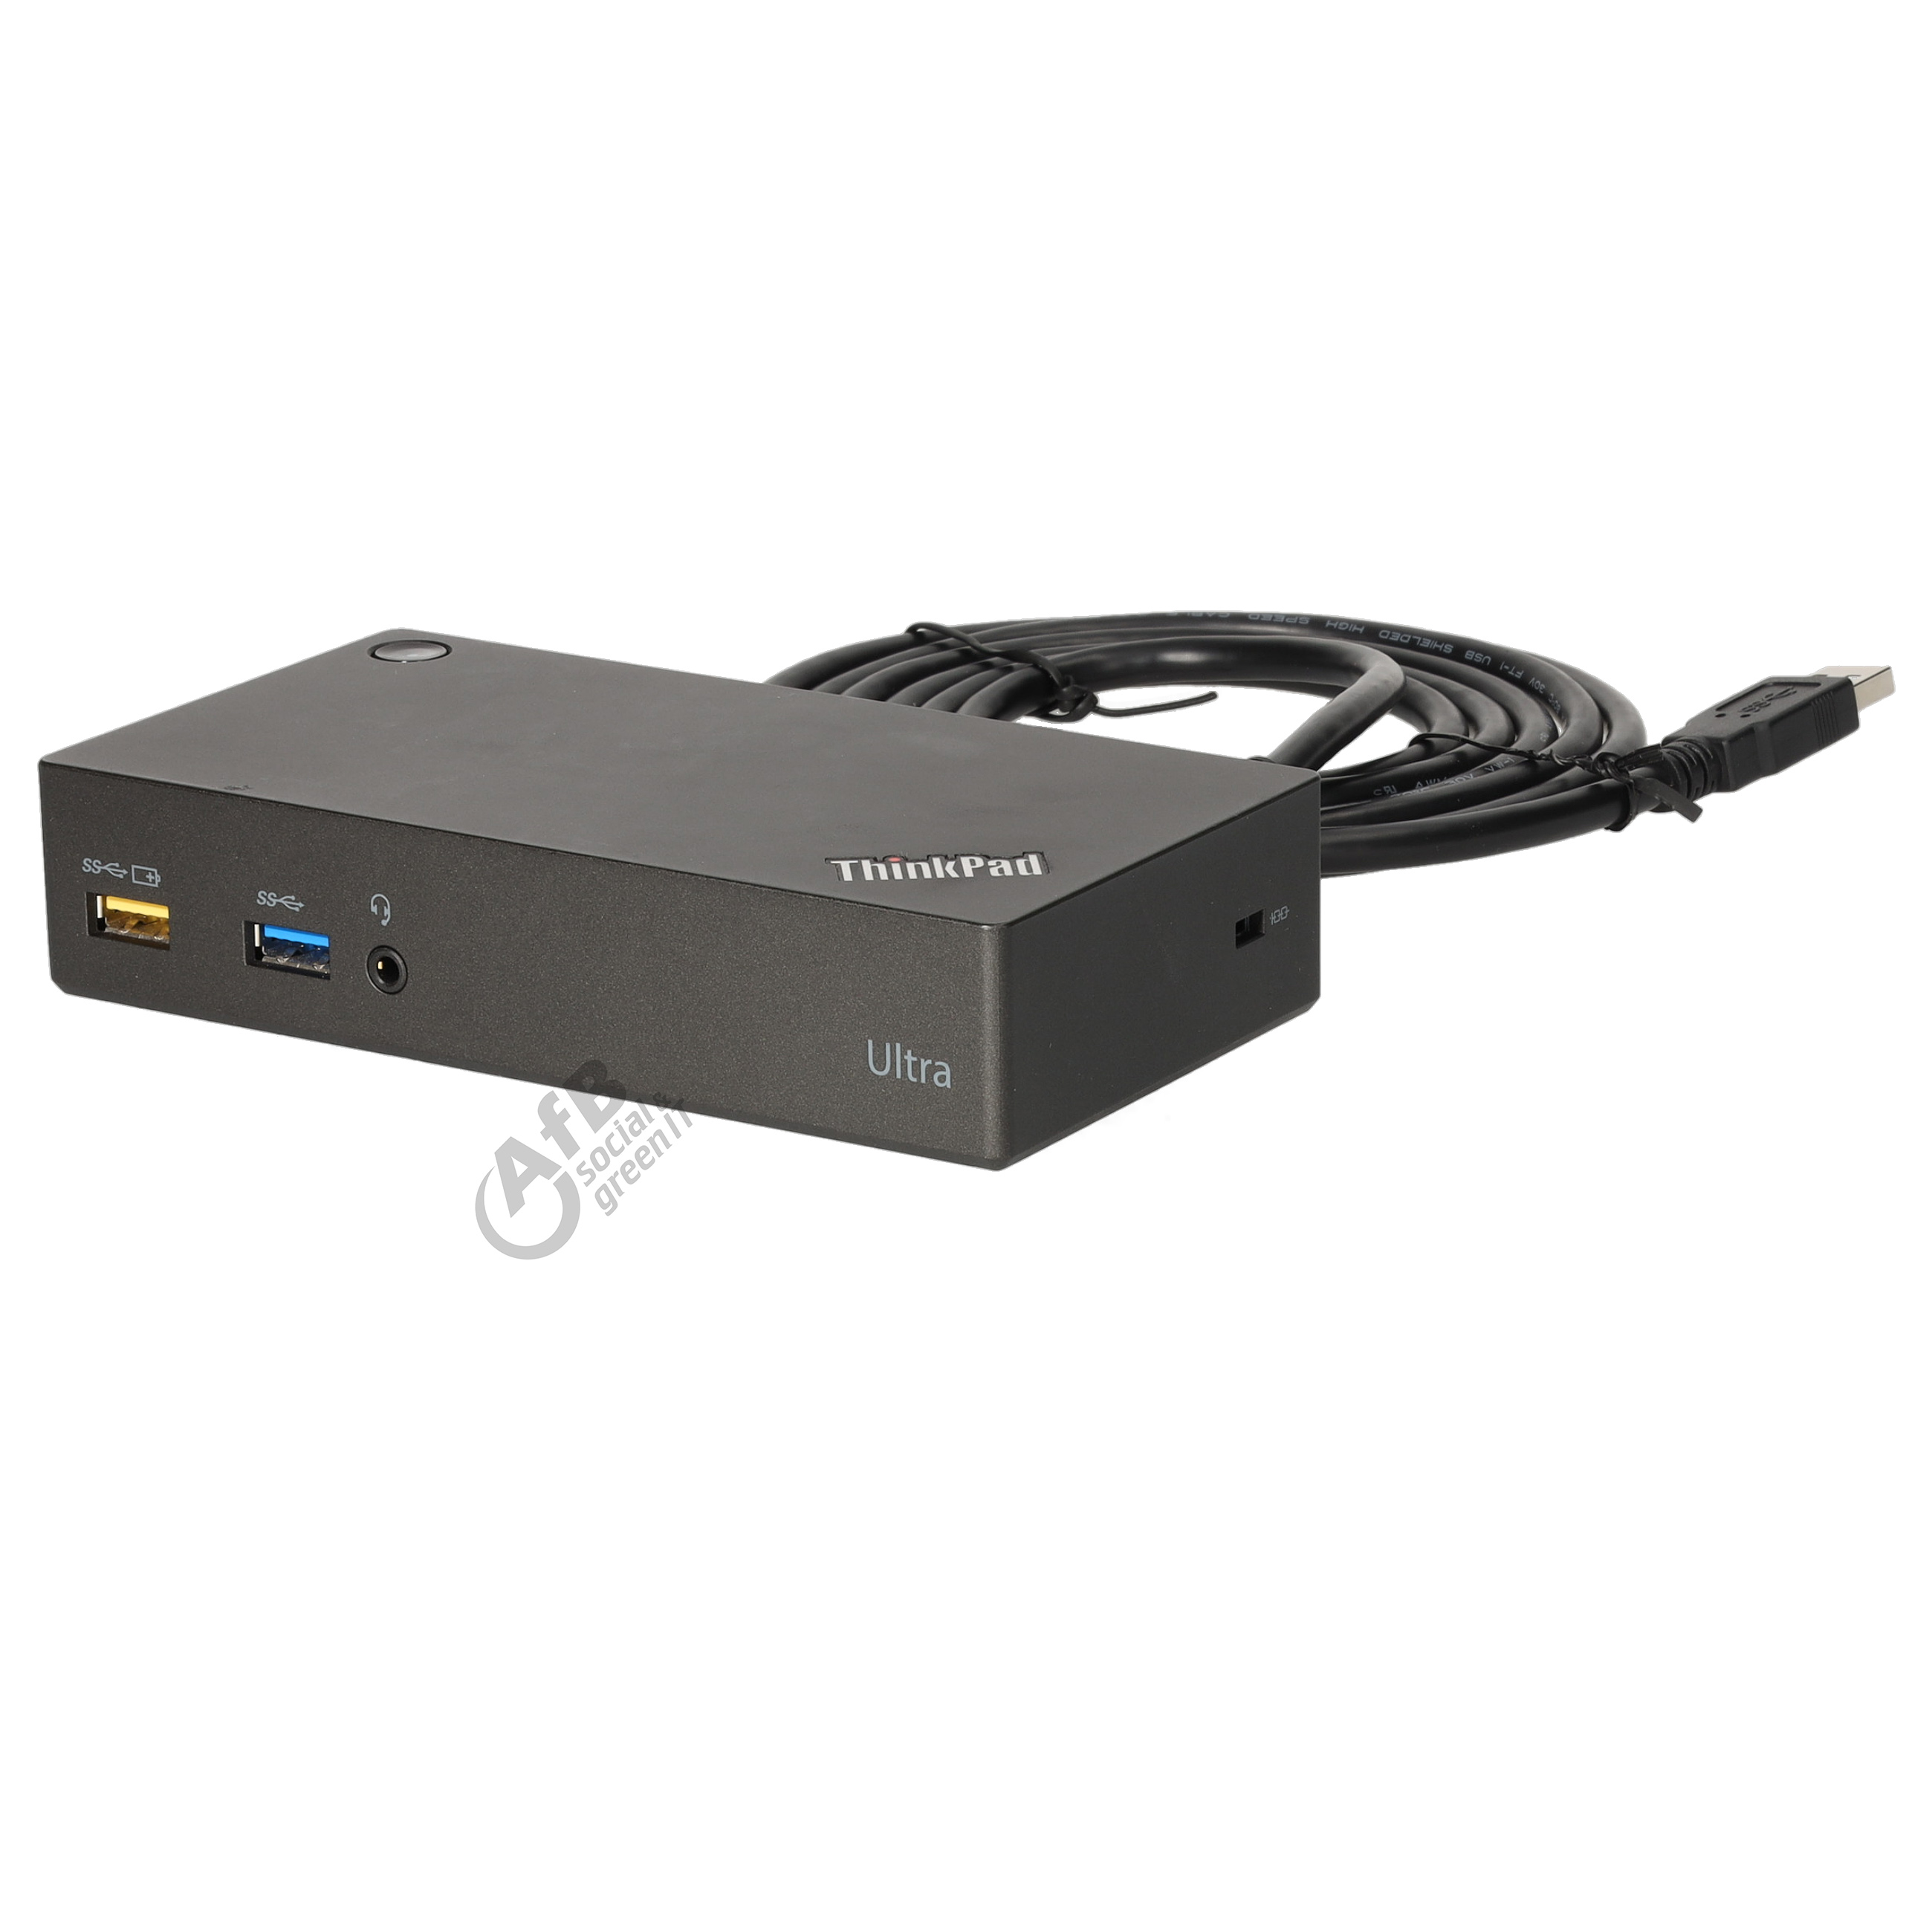 Lenovo ThinkPad USB 3.0 Ultra Dock - 40A8 mit USB Verbindungskabel - ohne Netzteil - Gebraucht